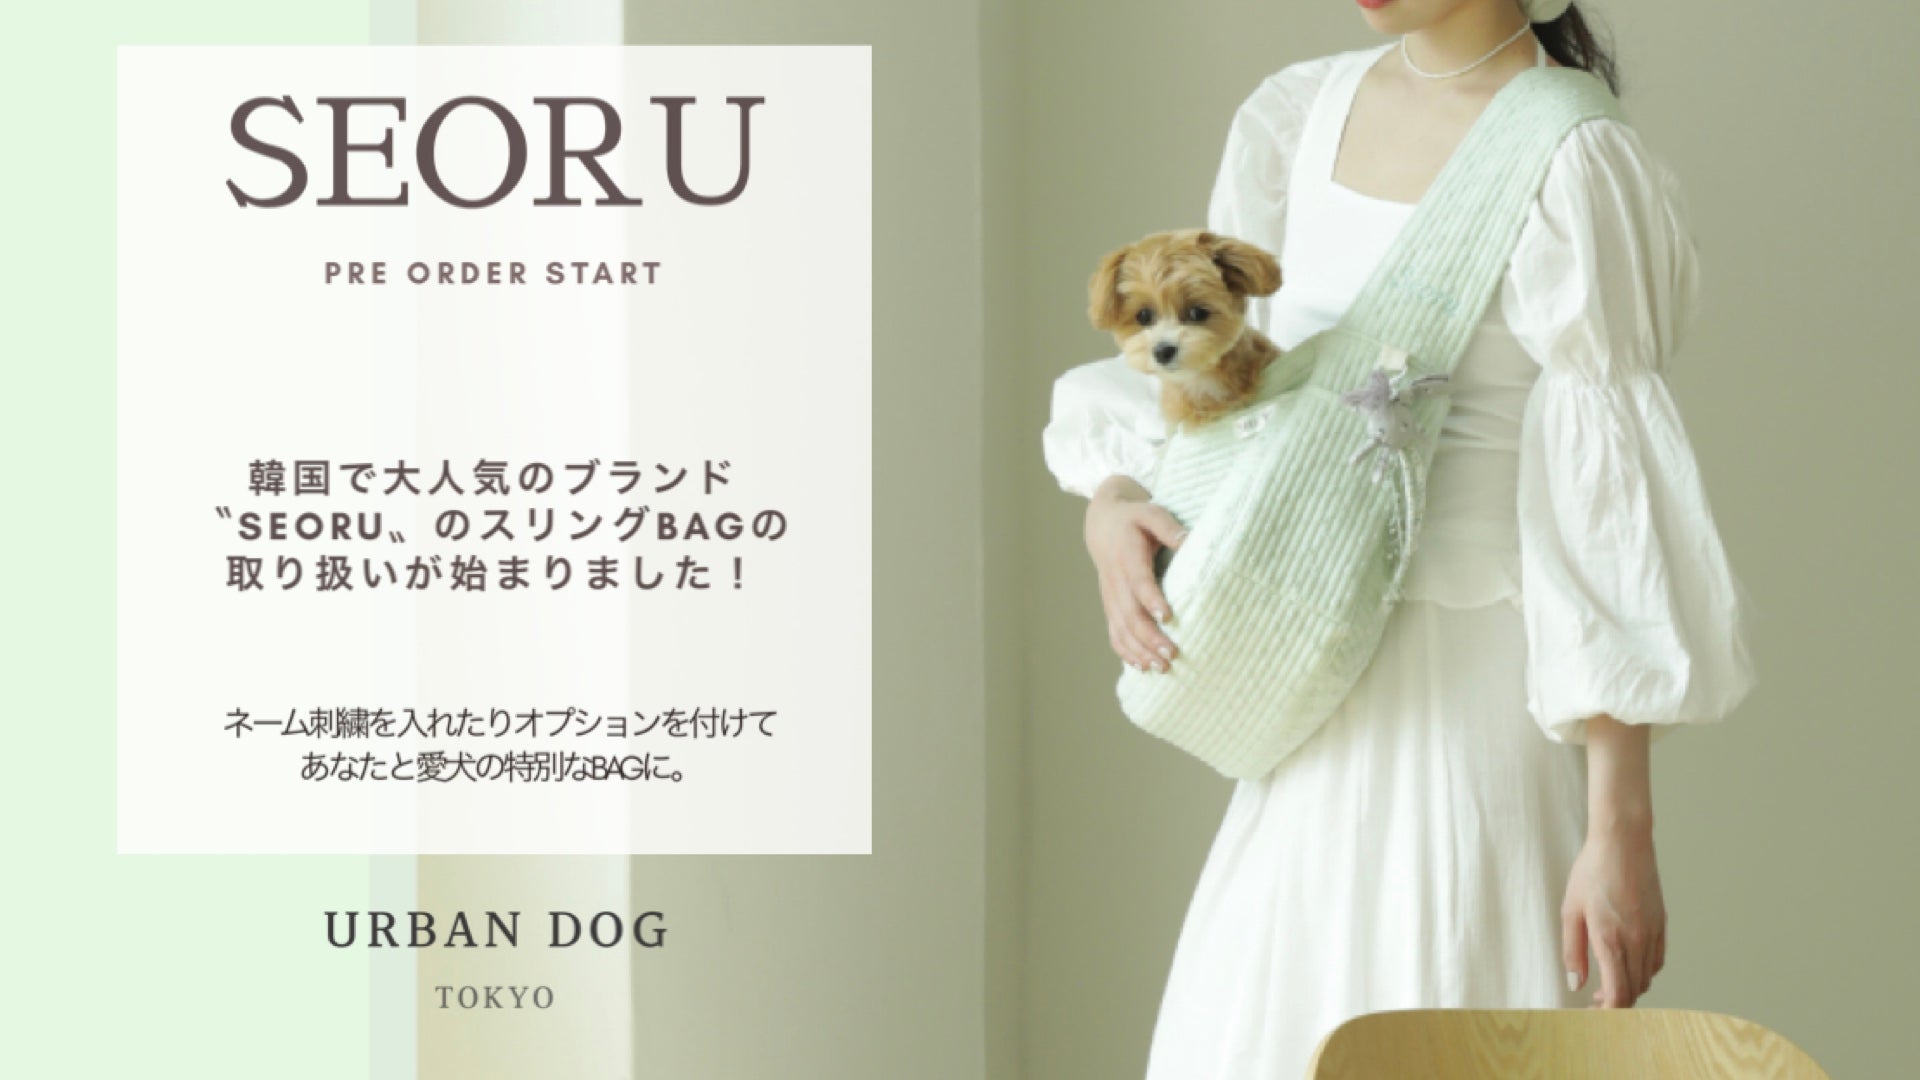 ドッグウェア通販 Urban Dog Tokyo 人気海外ブランドのドッグウェア多数販売